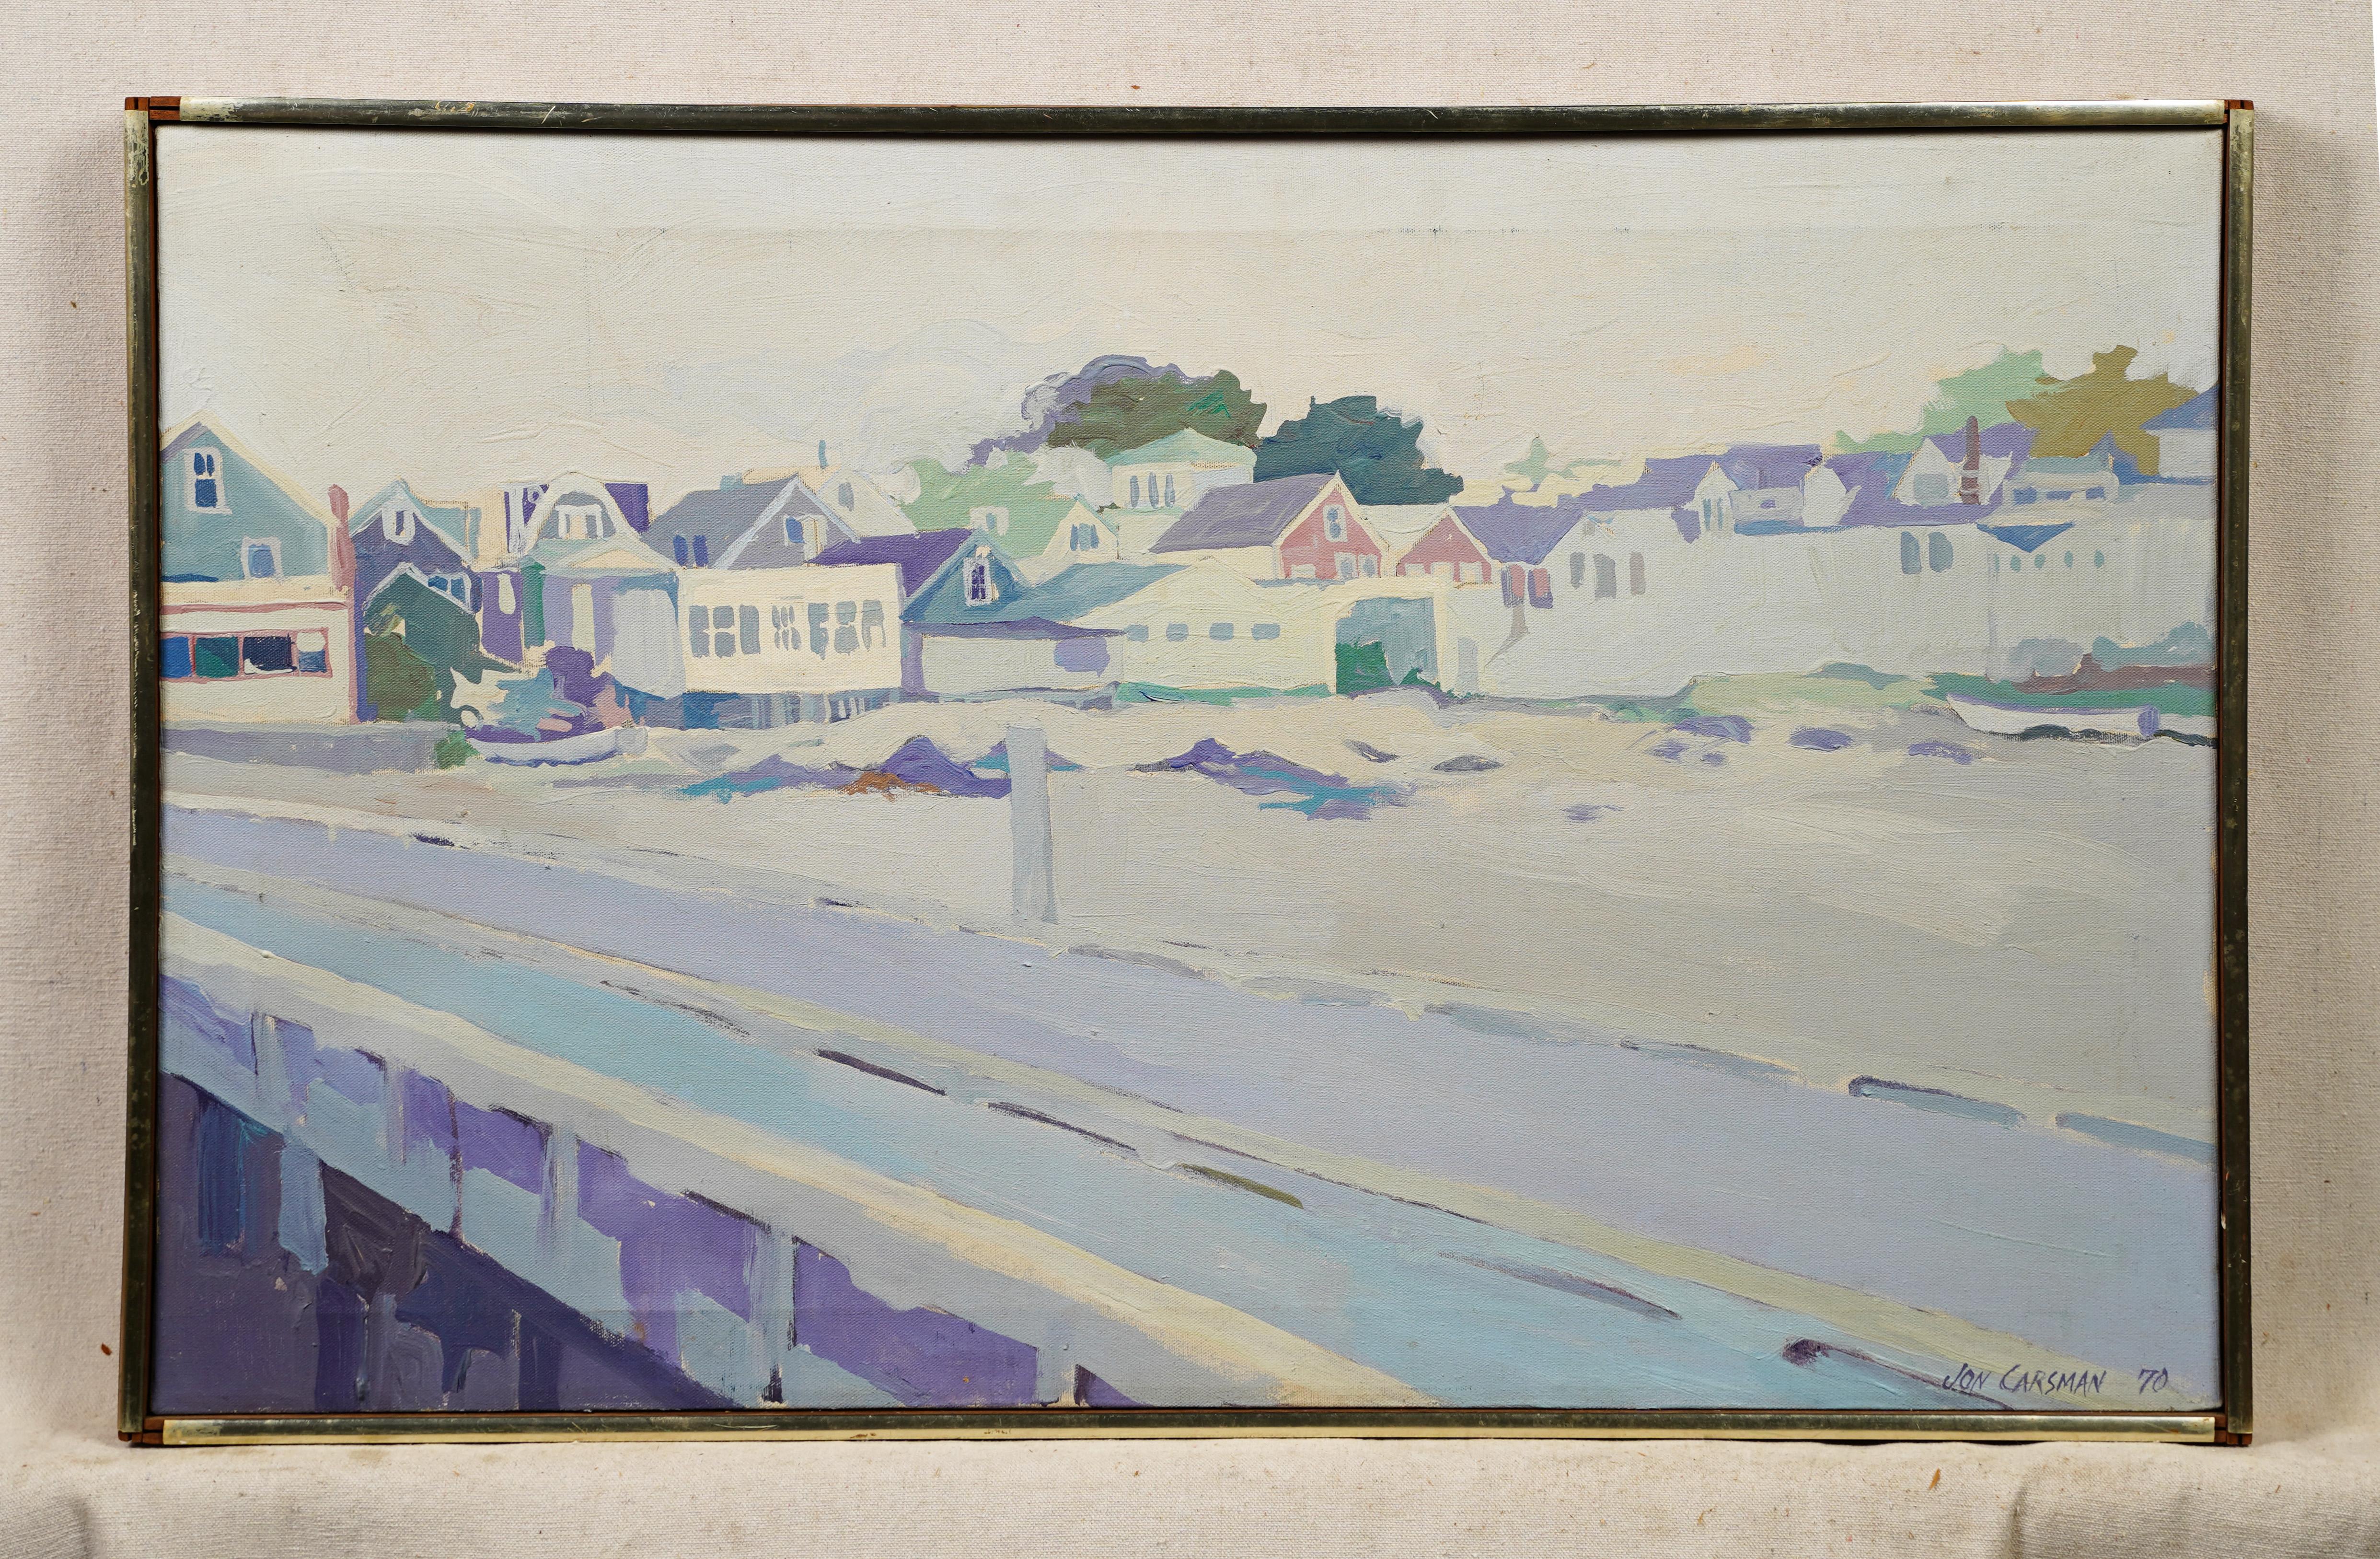  New England Beach Town Fauvist Palette Modernist Gerahmte große Ölgemälde (Impressionismus), Painting, von Jon Carsman 